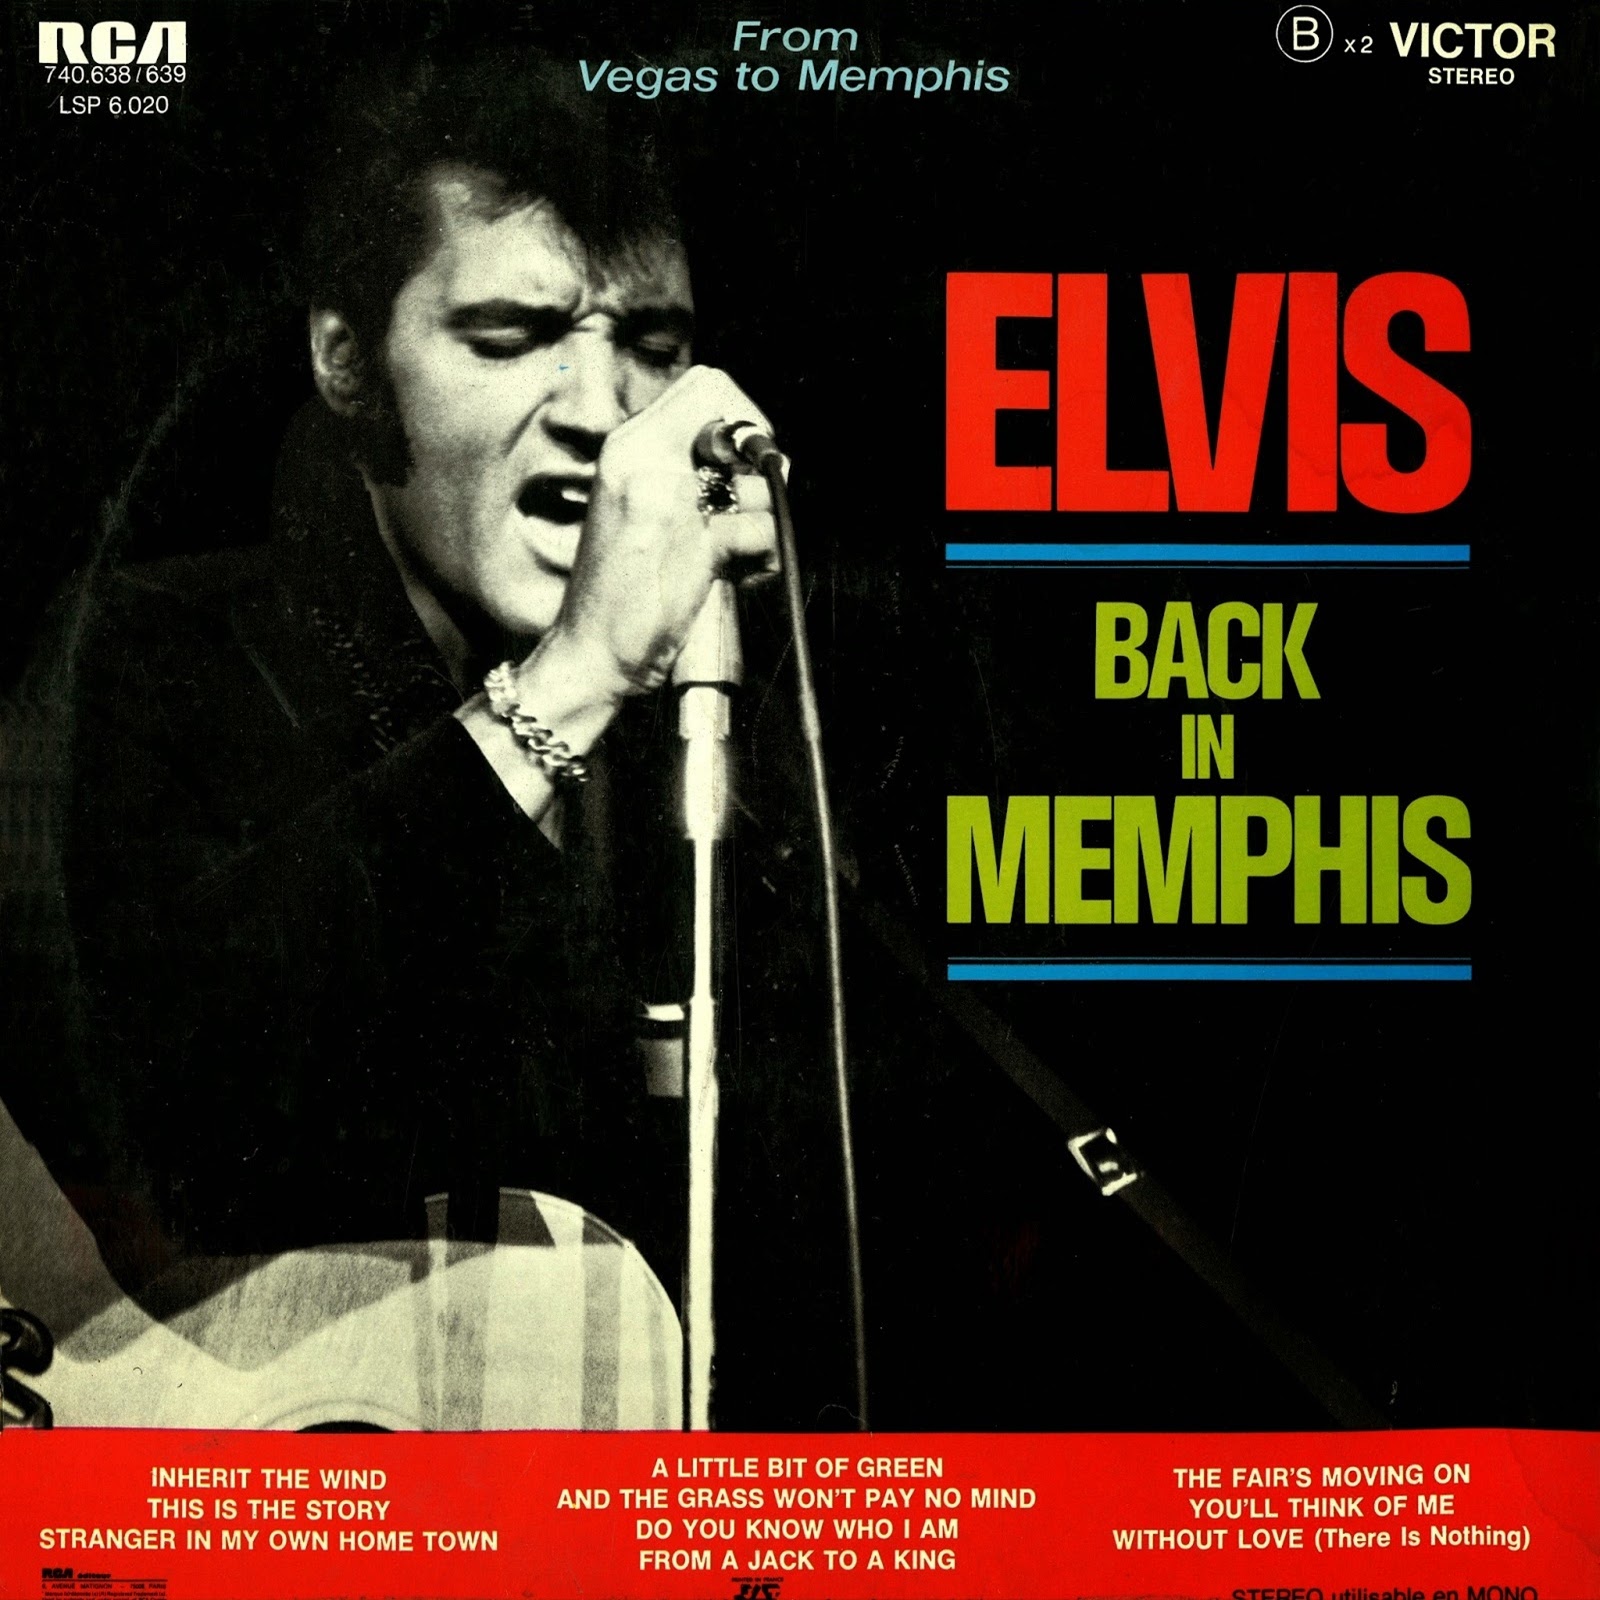 Back In Memphis - Elvis Presley.